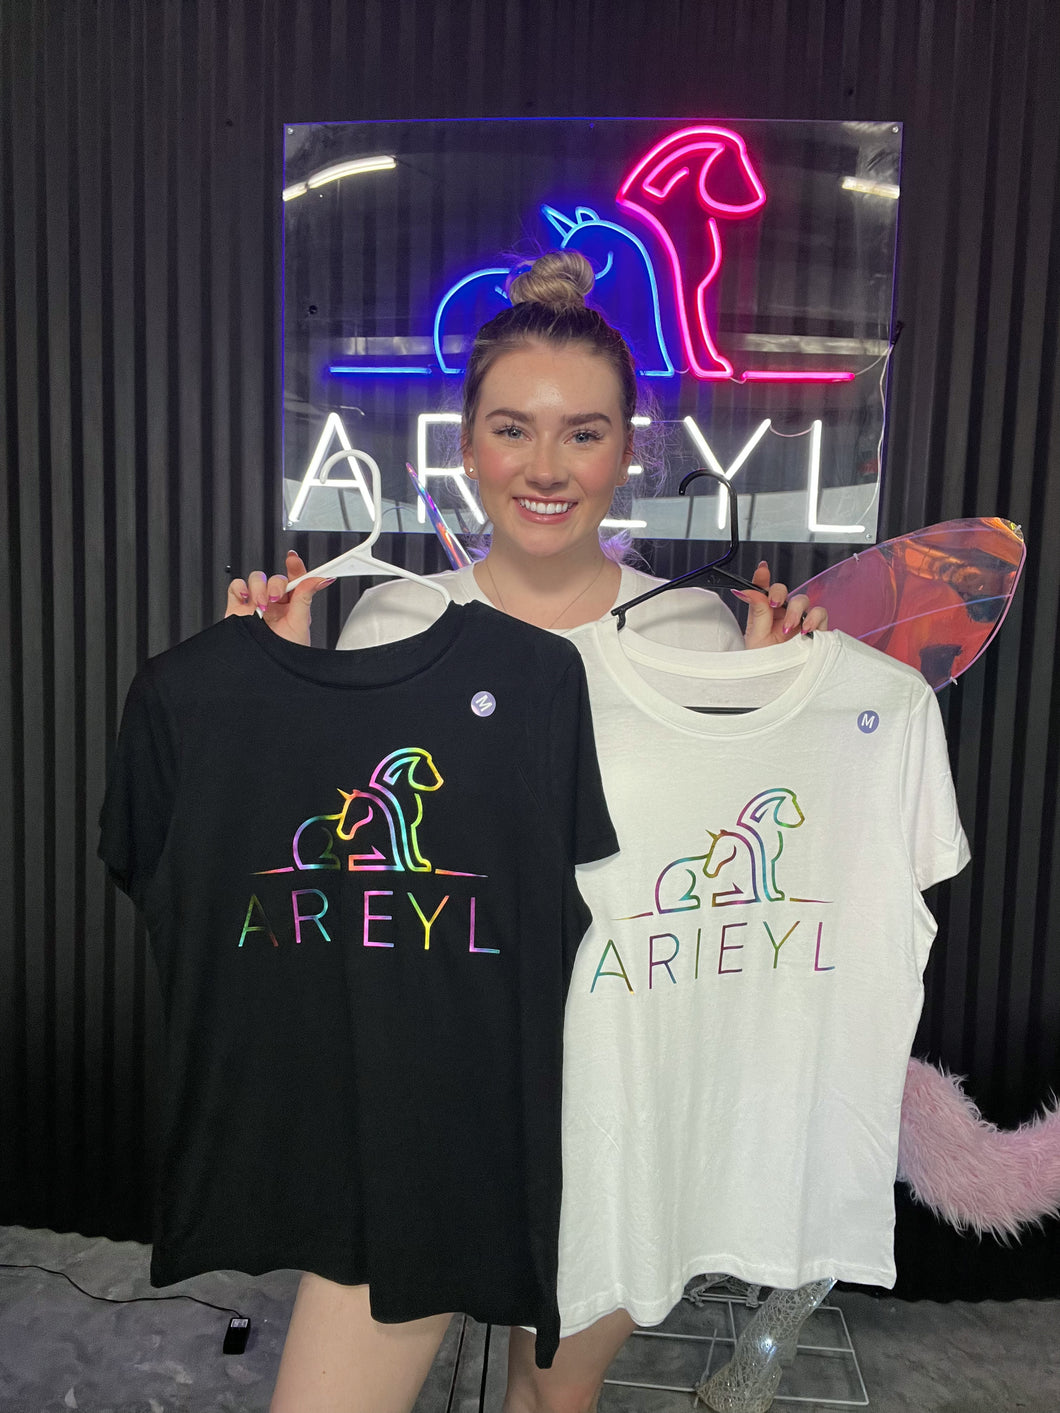 Arieyl Metallic Rainbow Logo Shirt